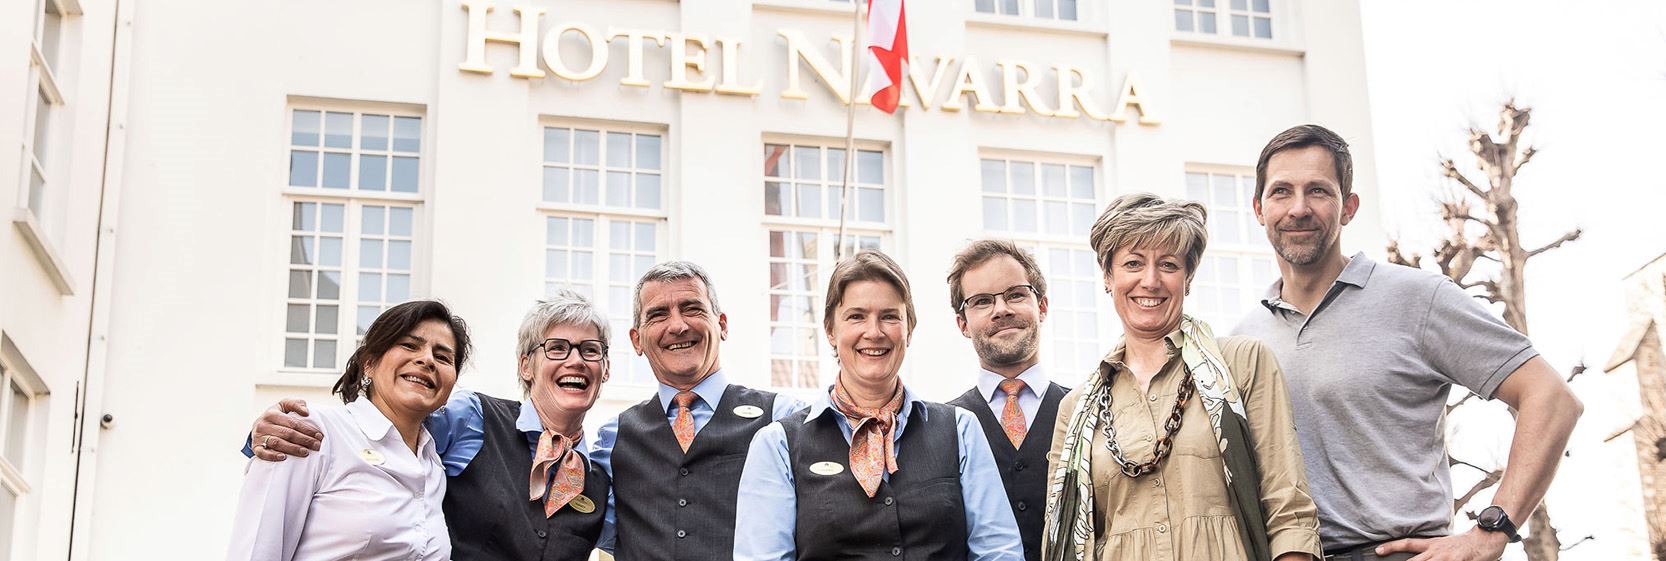 Hotel Navarra Bruges Voici Notre Equipe